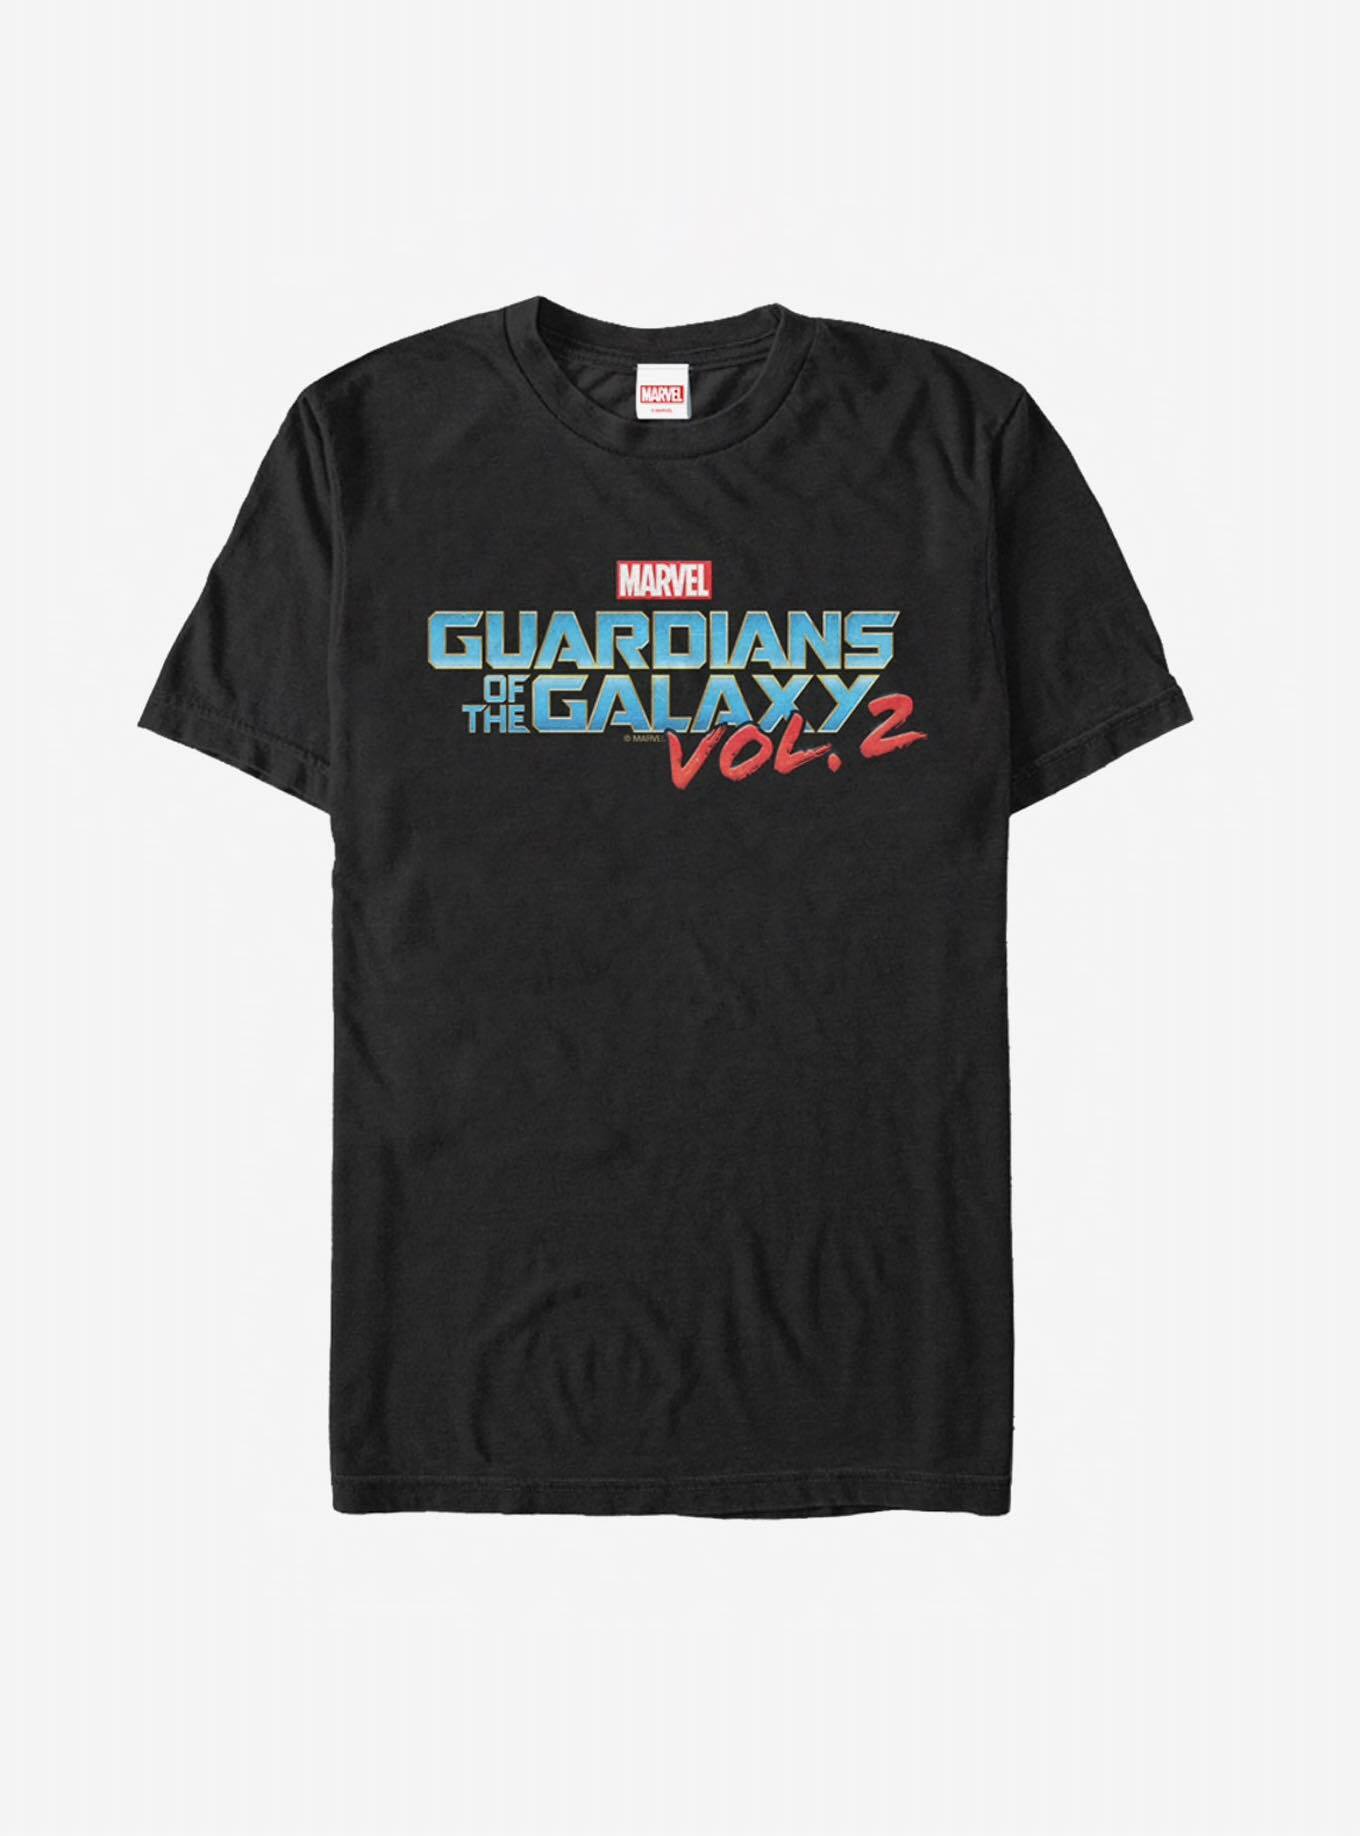 Tシャツ ガーディアンズ オブ ギャラクシー Vol.2 ロゴ